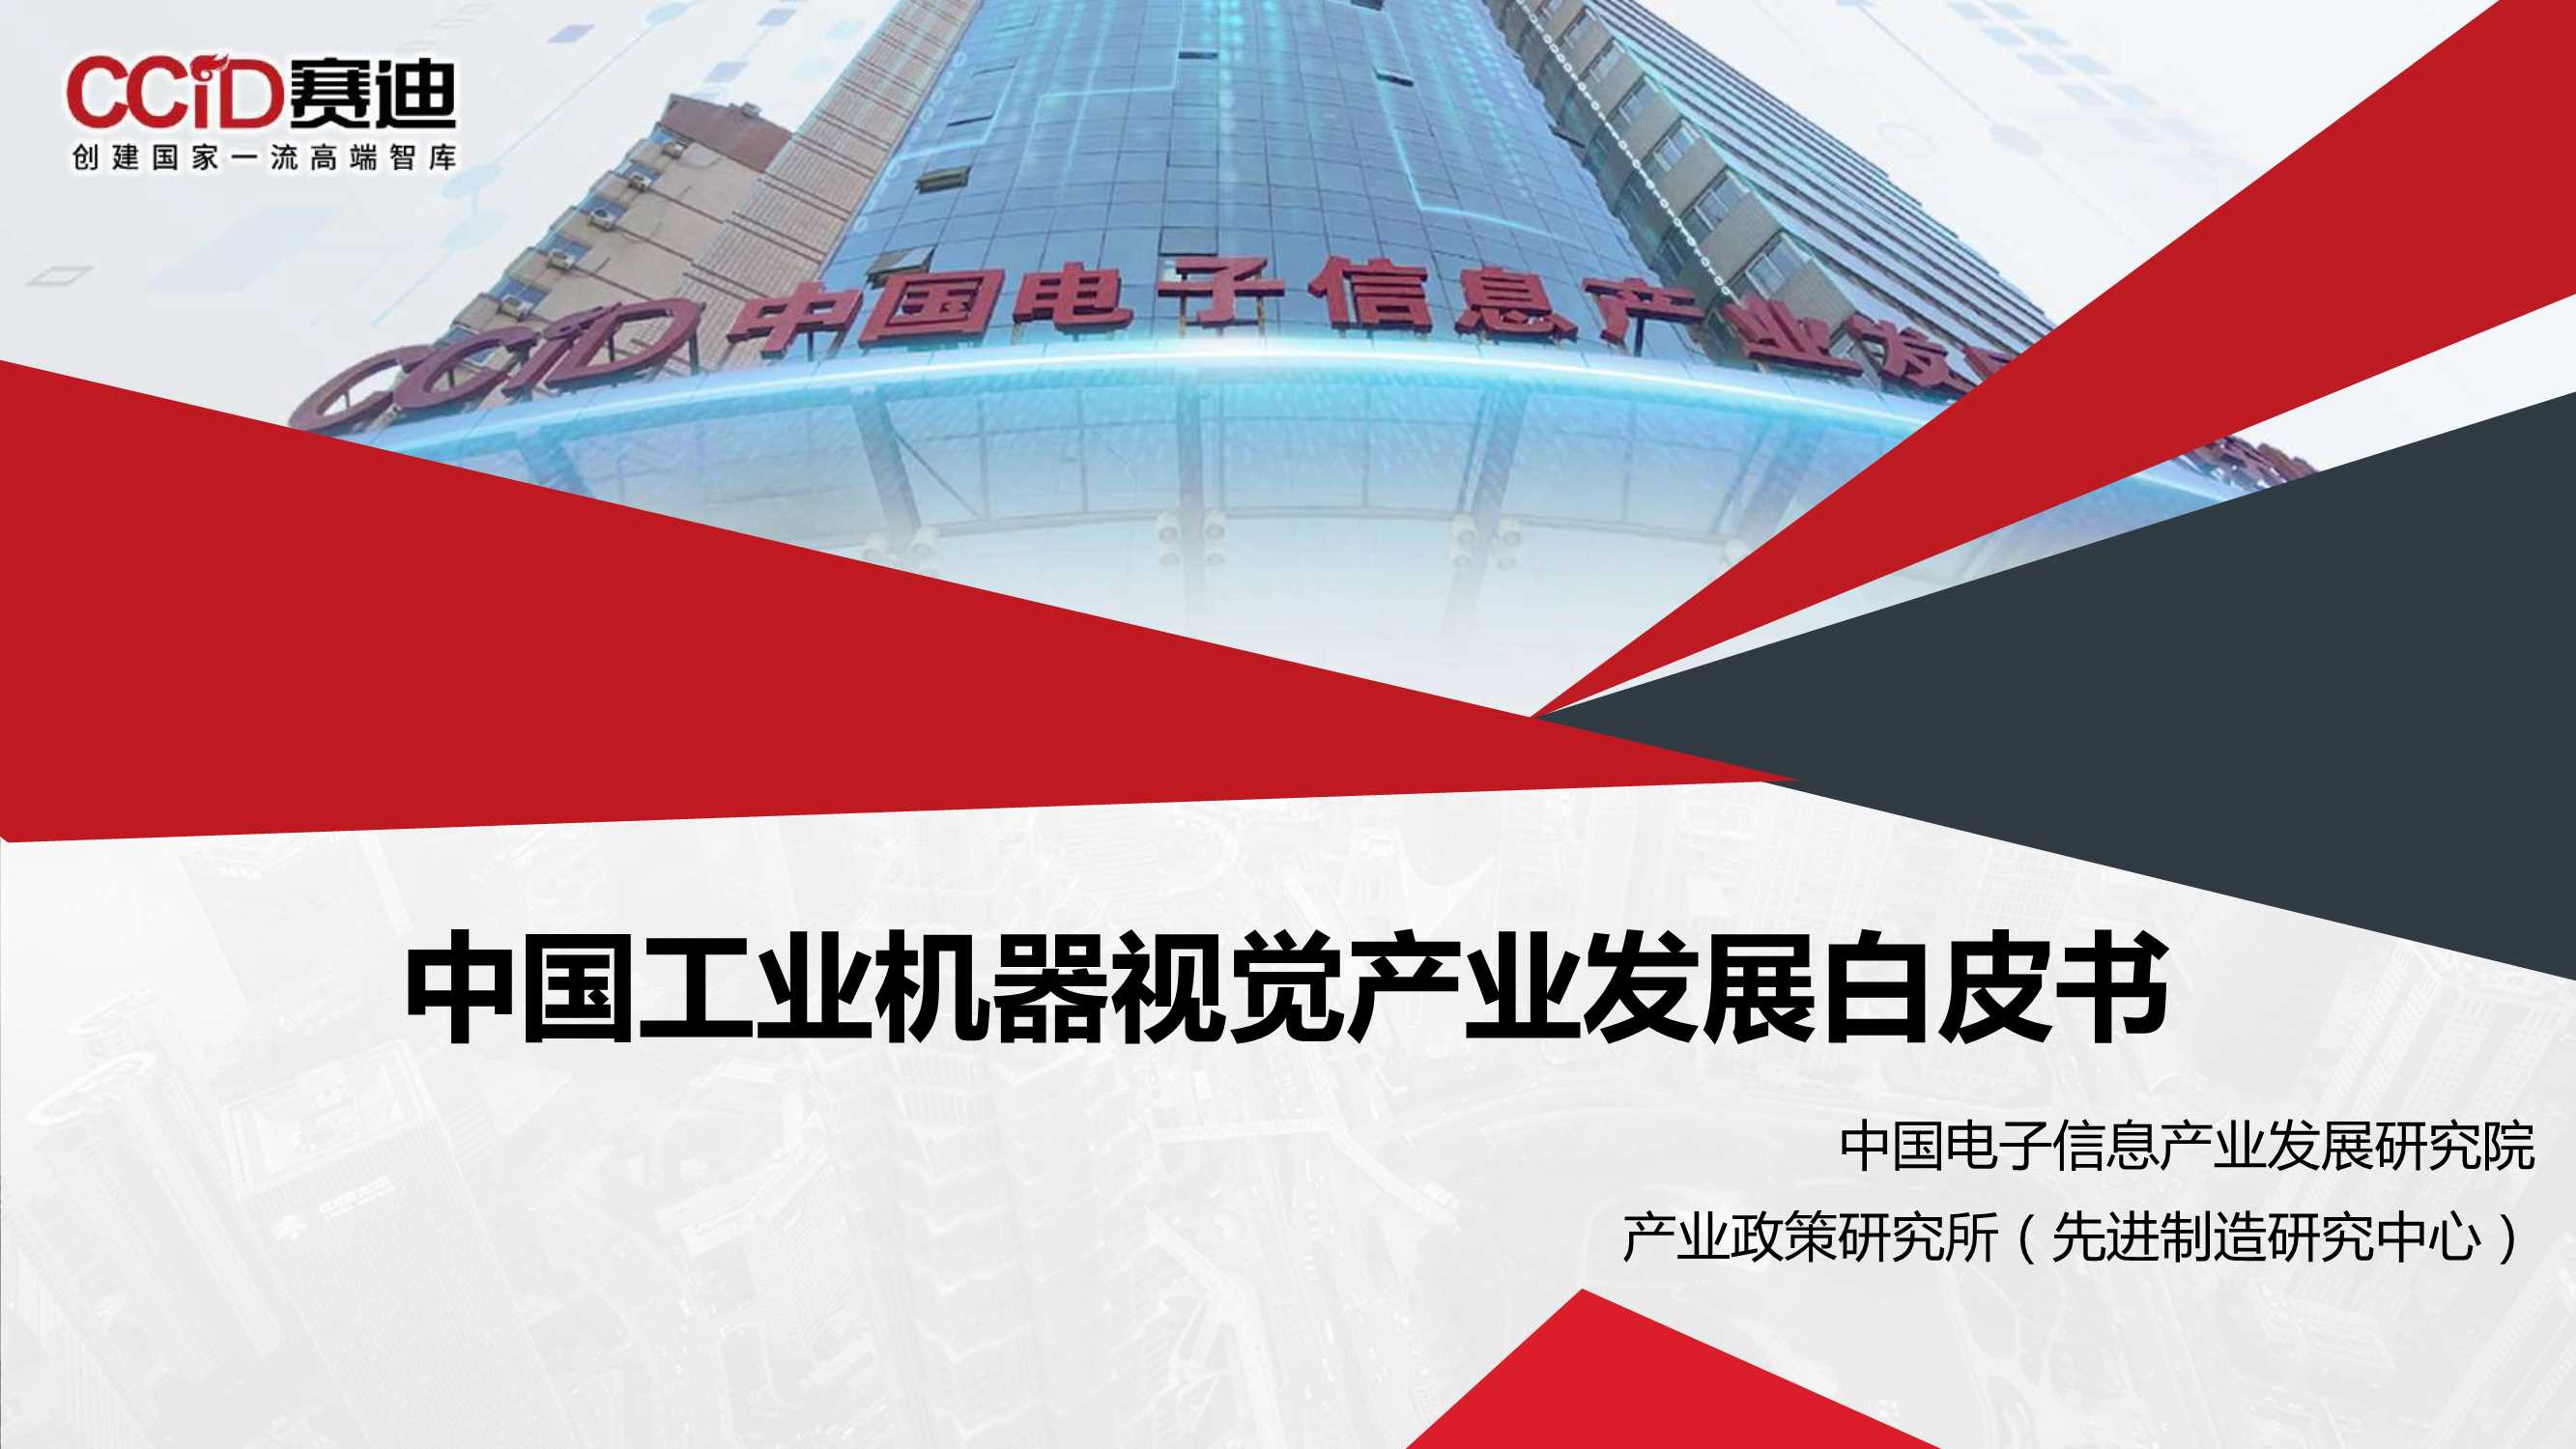 董峰-中国工业机器视觉产业发展白皮书-2021.10-31页